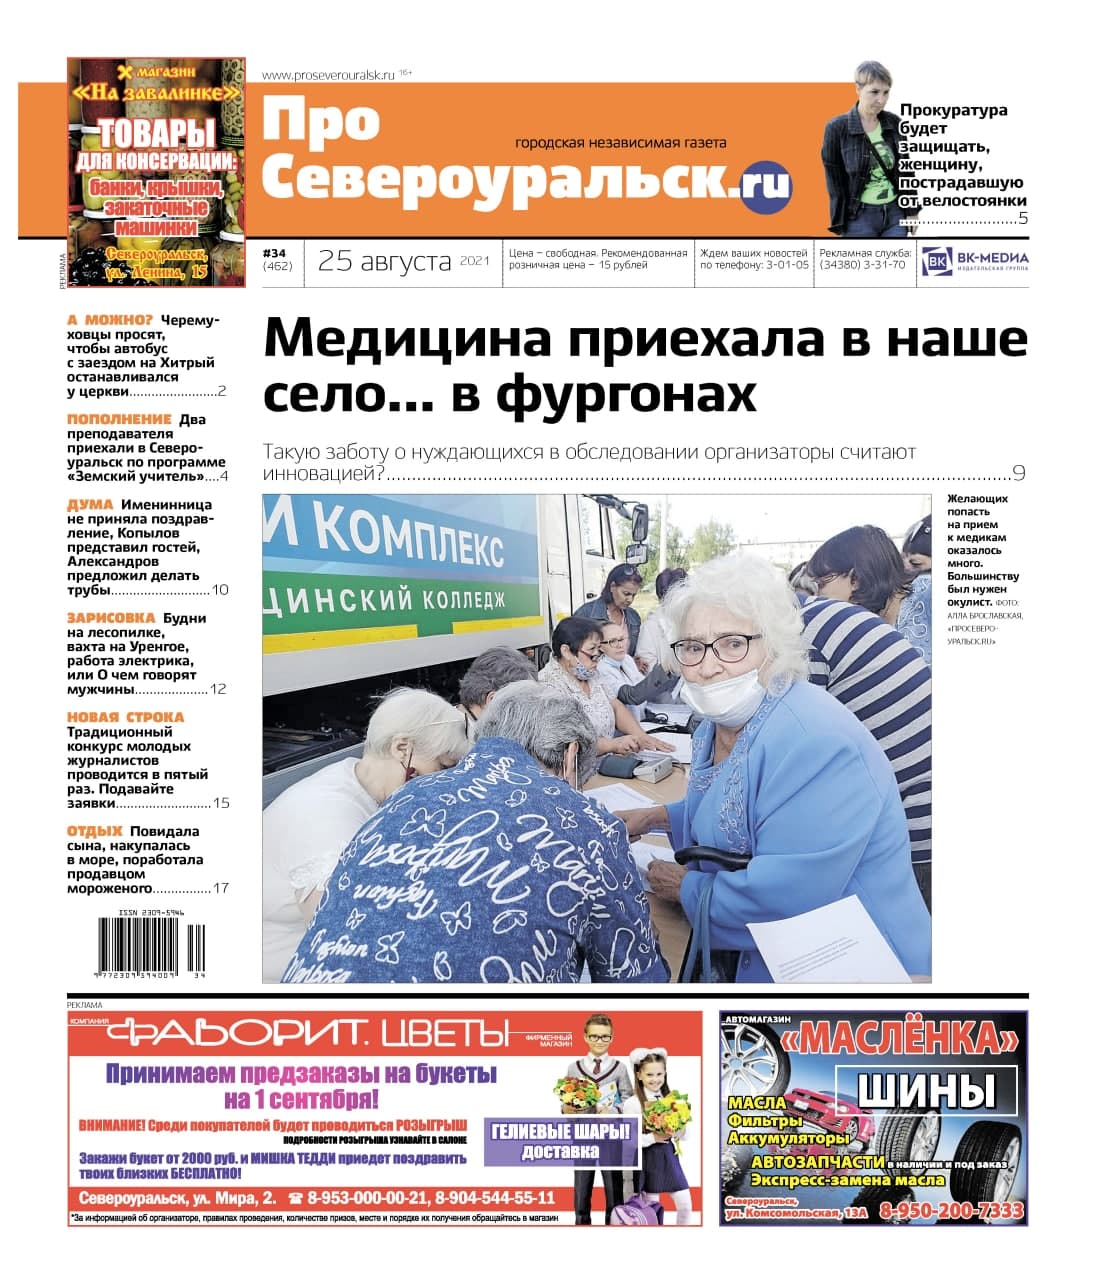 Медицина приехала на колесах, женщина отдохнула и поработала в Крыму. И другие новости города - в газете